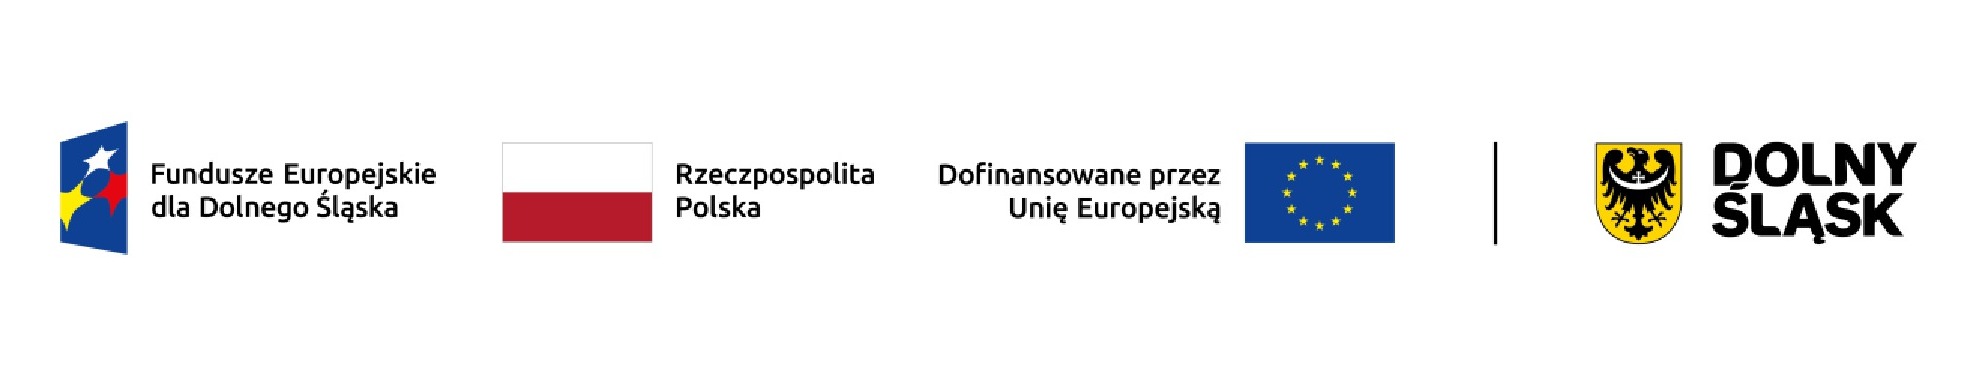 Obrazek dla: Informacja o realizacji projektu finansowanego w ramach Programu Fundusze Europejskie dla Dolnego Śląska